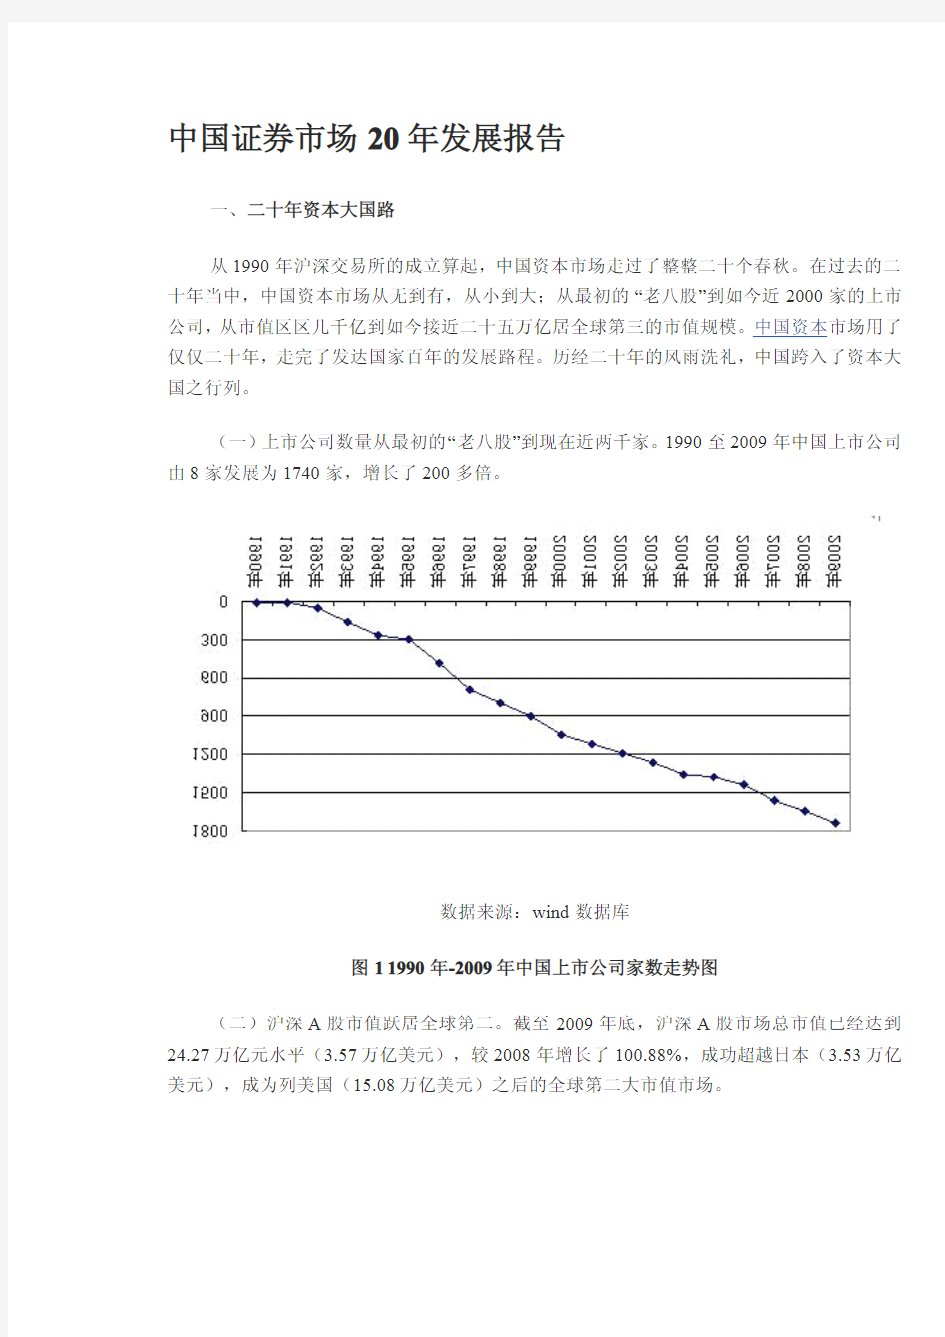 中国证券市场二十年发展报告